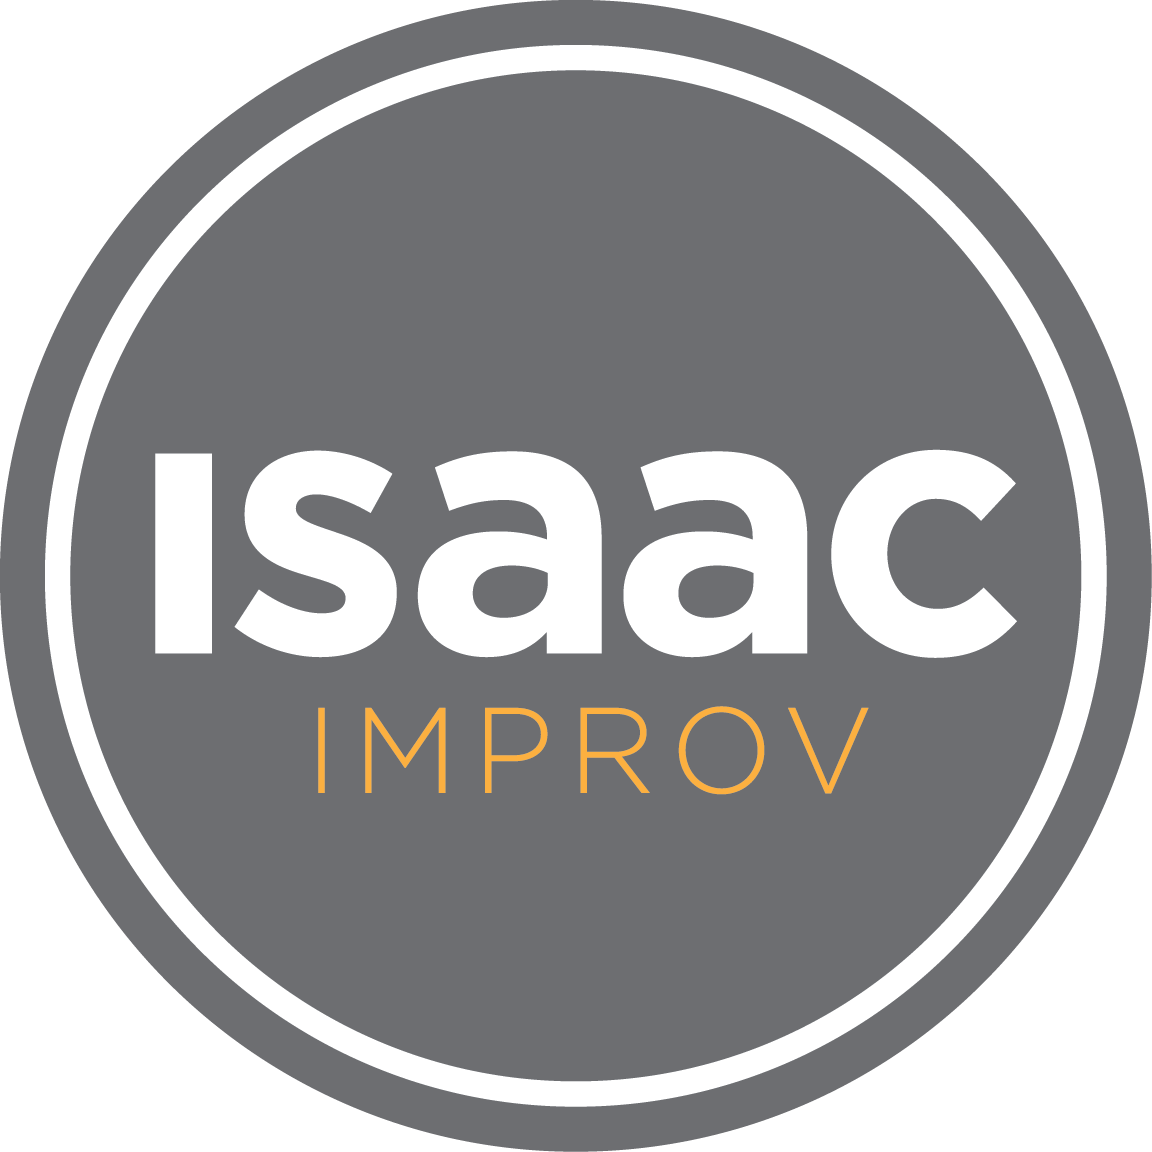 Isaac Improv